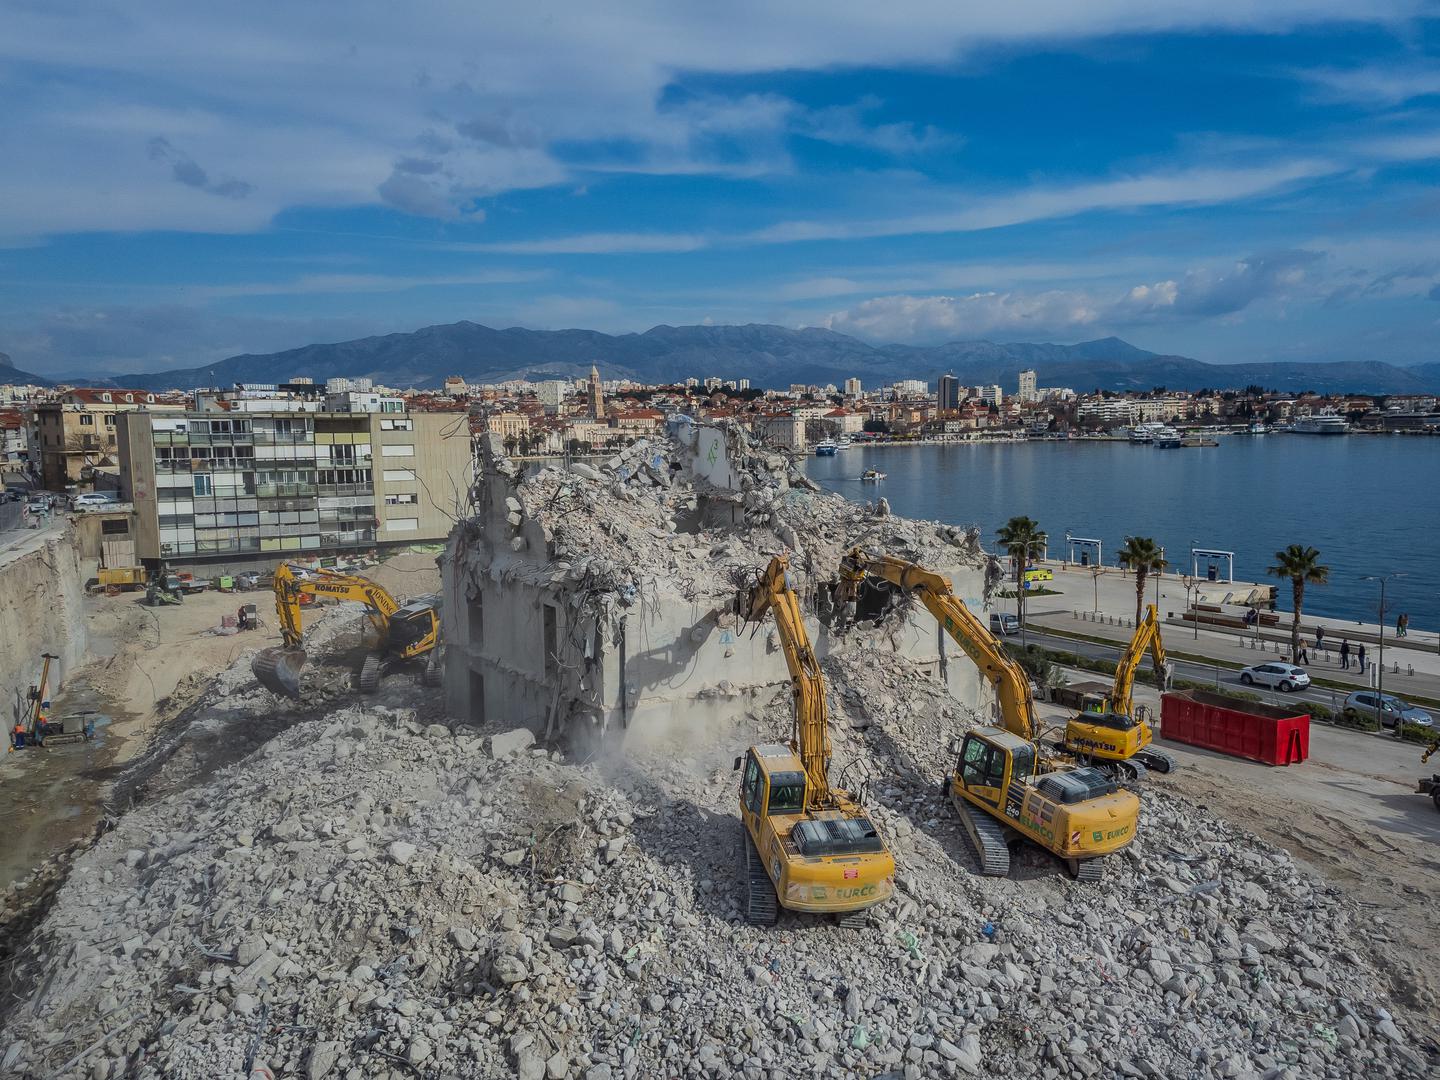 Nova obnova donosi nadu u ponovno oživljavanje ovog legendarnog hotela i pružanje vrhunske turističke ponude u srcu Splita.